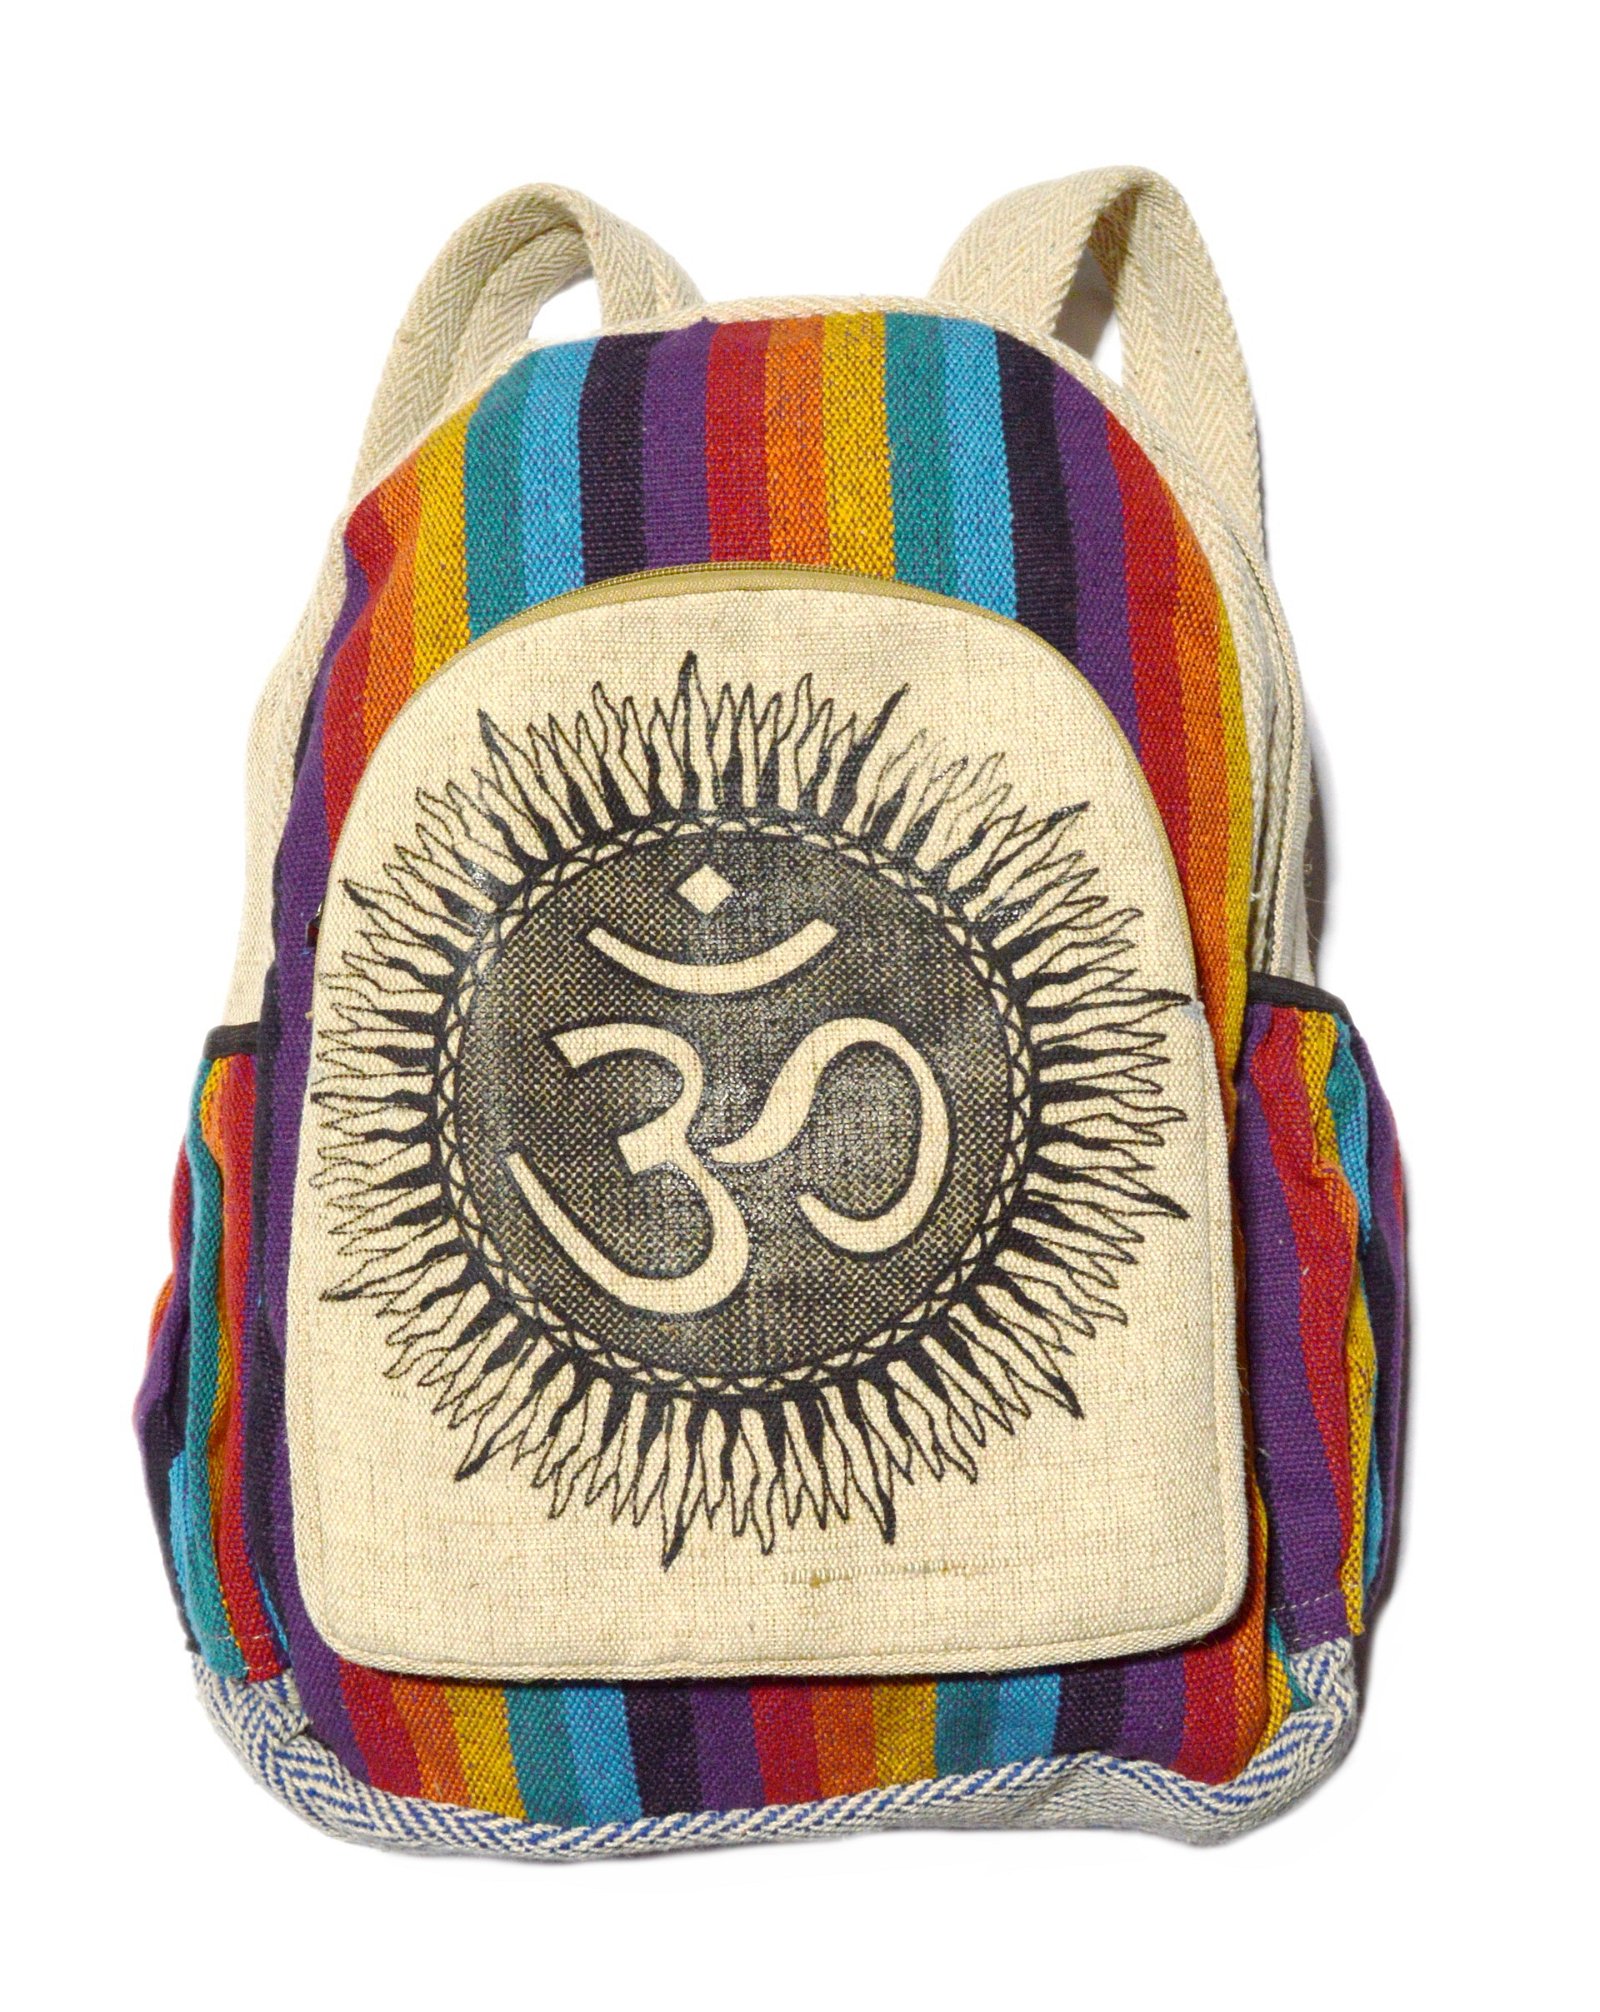 Рюкзак с ОМ №3, разноцветные полосы, 34 x 44 см. 